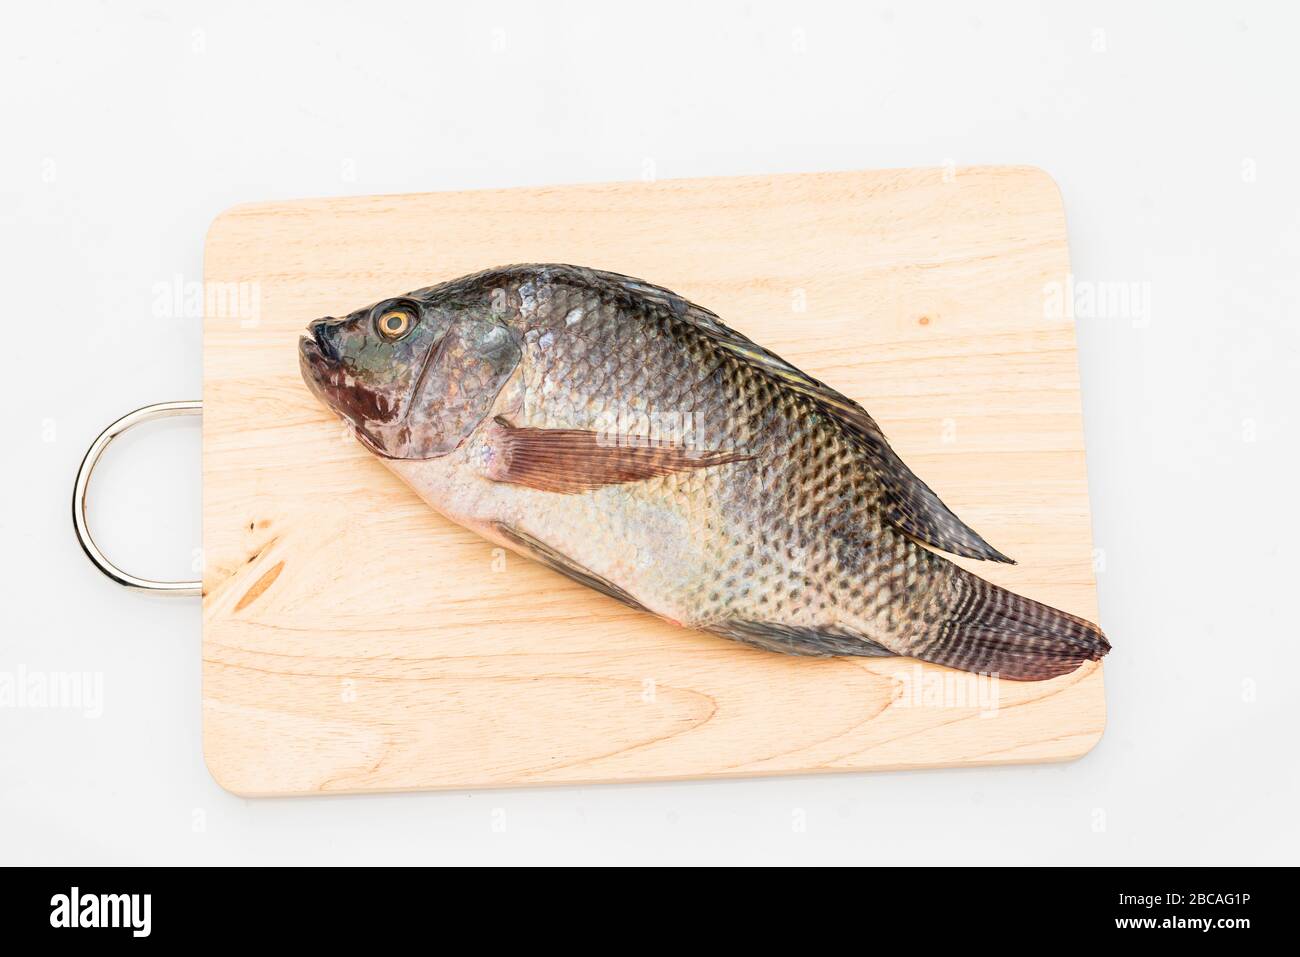 Nile tilapia fish isolated on white background. Stock Photo